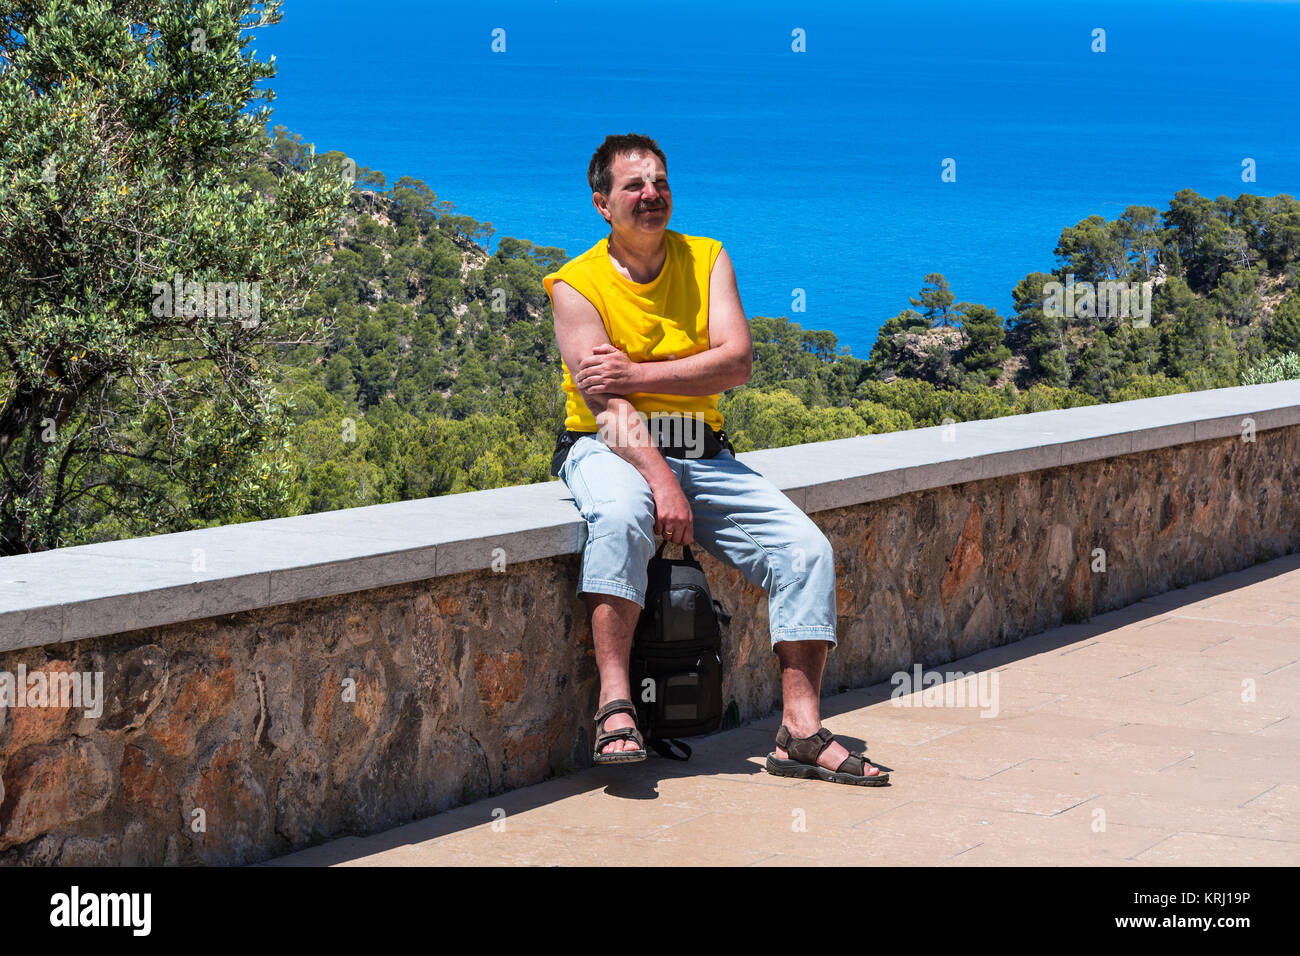 Ein Mann sitzt bei Sonneschein auf einer Mauer im Hintergrund Pinienwald und das blaue Meer. Aufnahme auf Mallorca, Spanien. Foto Stock